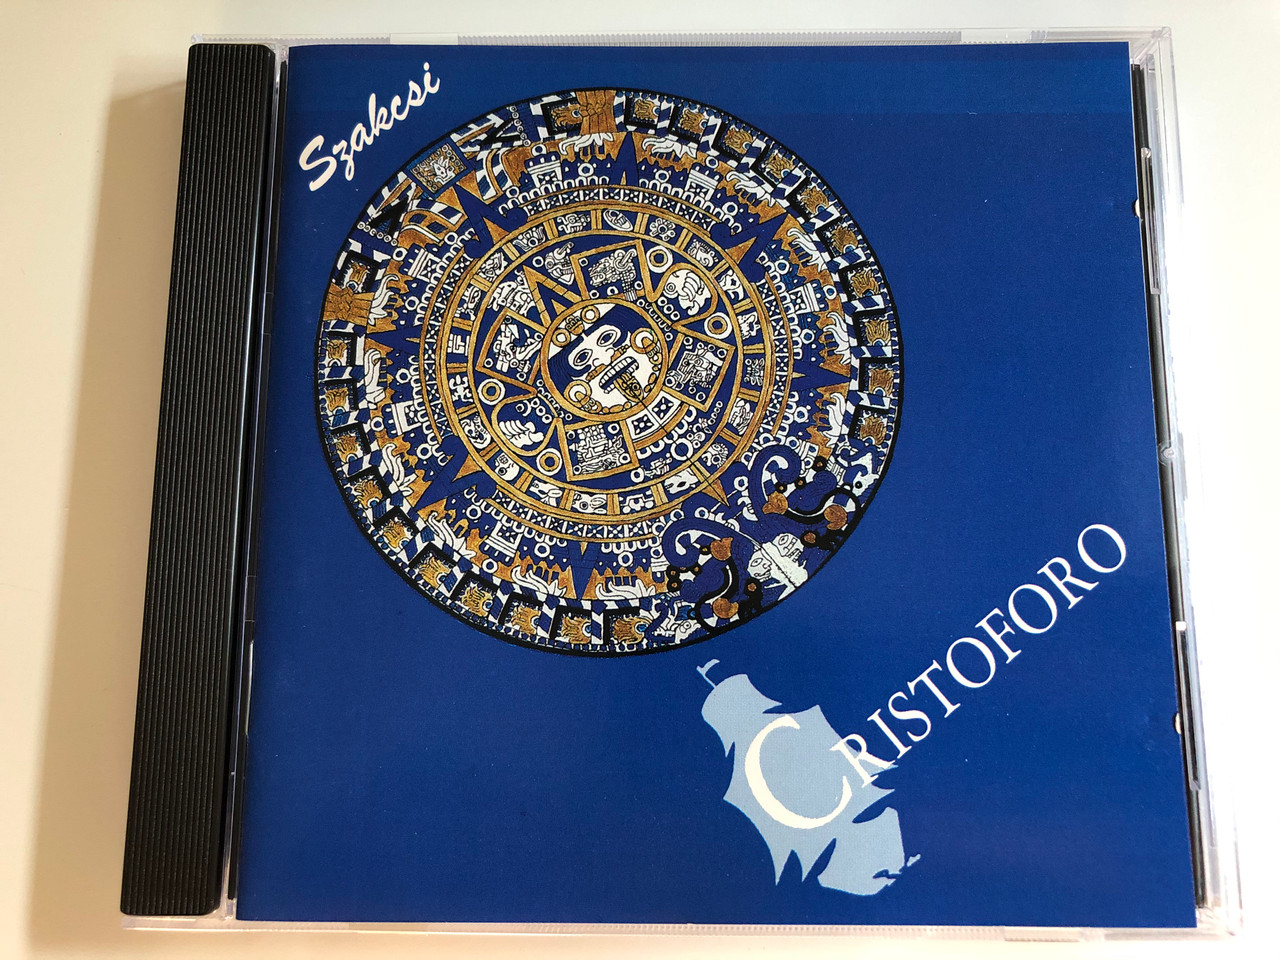 Szakcsi - Cristoforo ballet / Lobosound Audio CD 1992 Stereo / LSCD 001 /  Szakcsi Lakatos Béla / Kóródy Ildikó - Bible in My Language